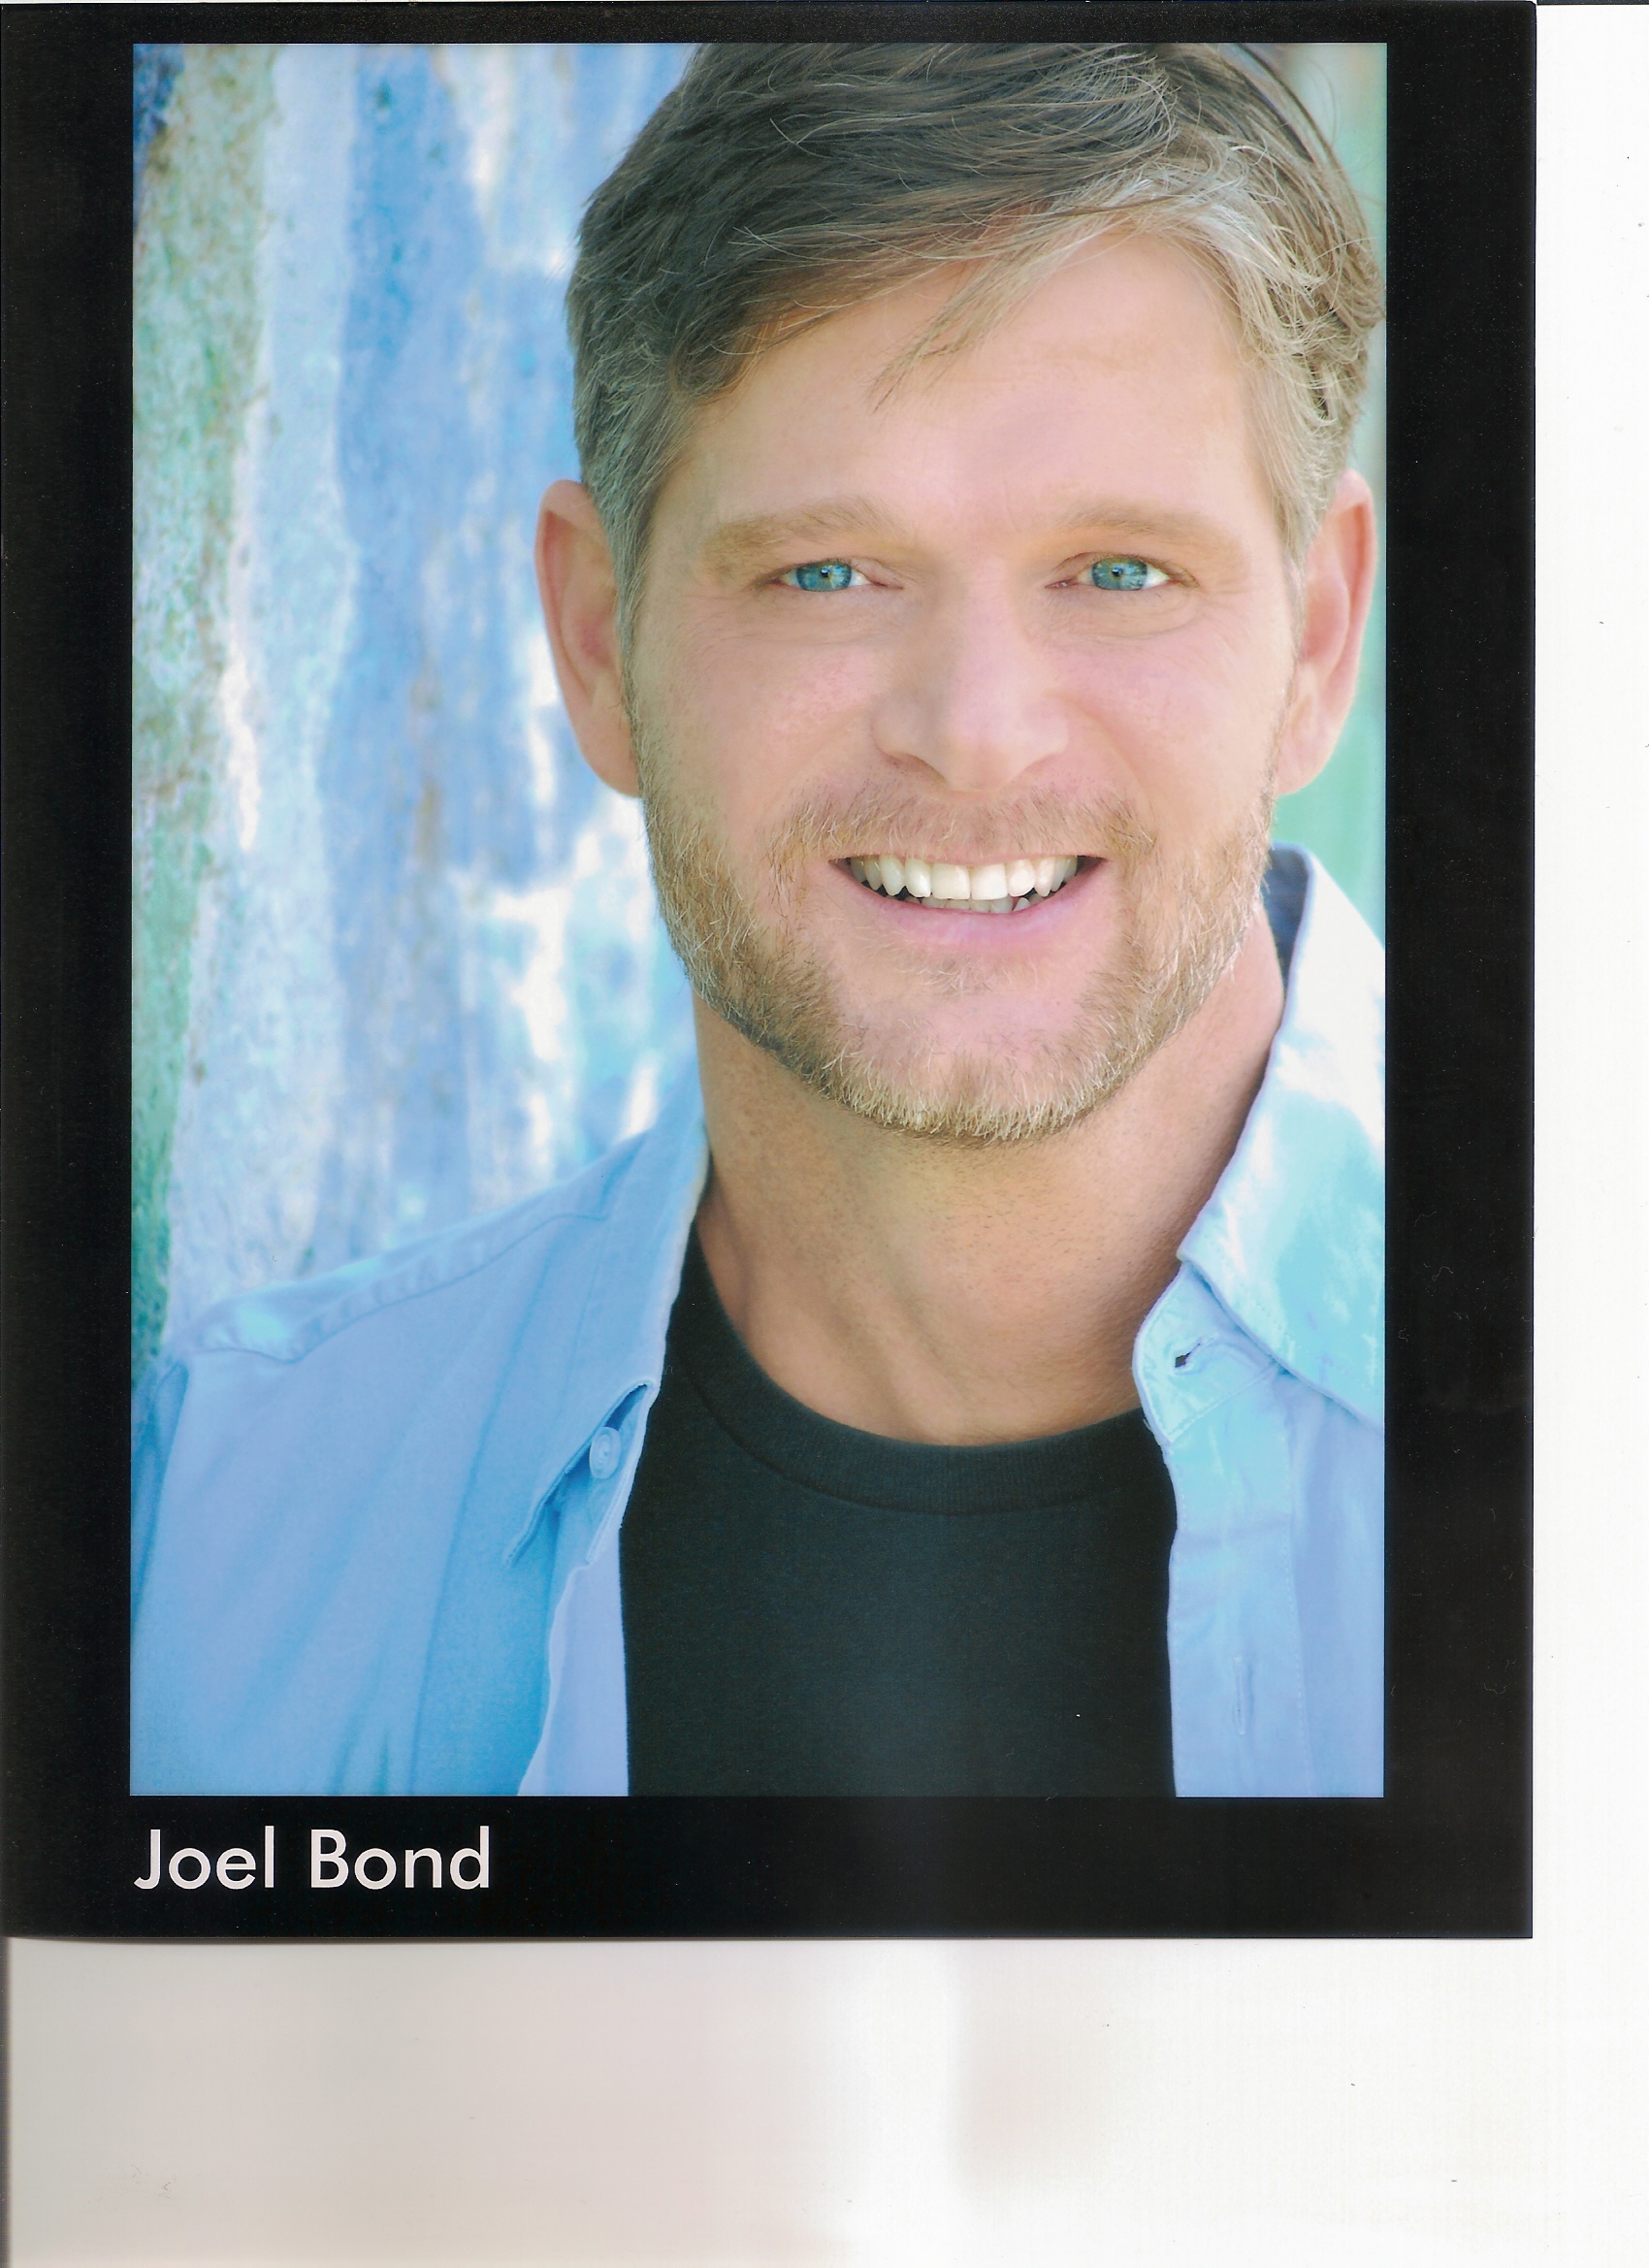 Joel Bond